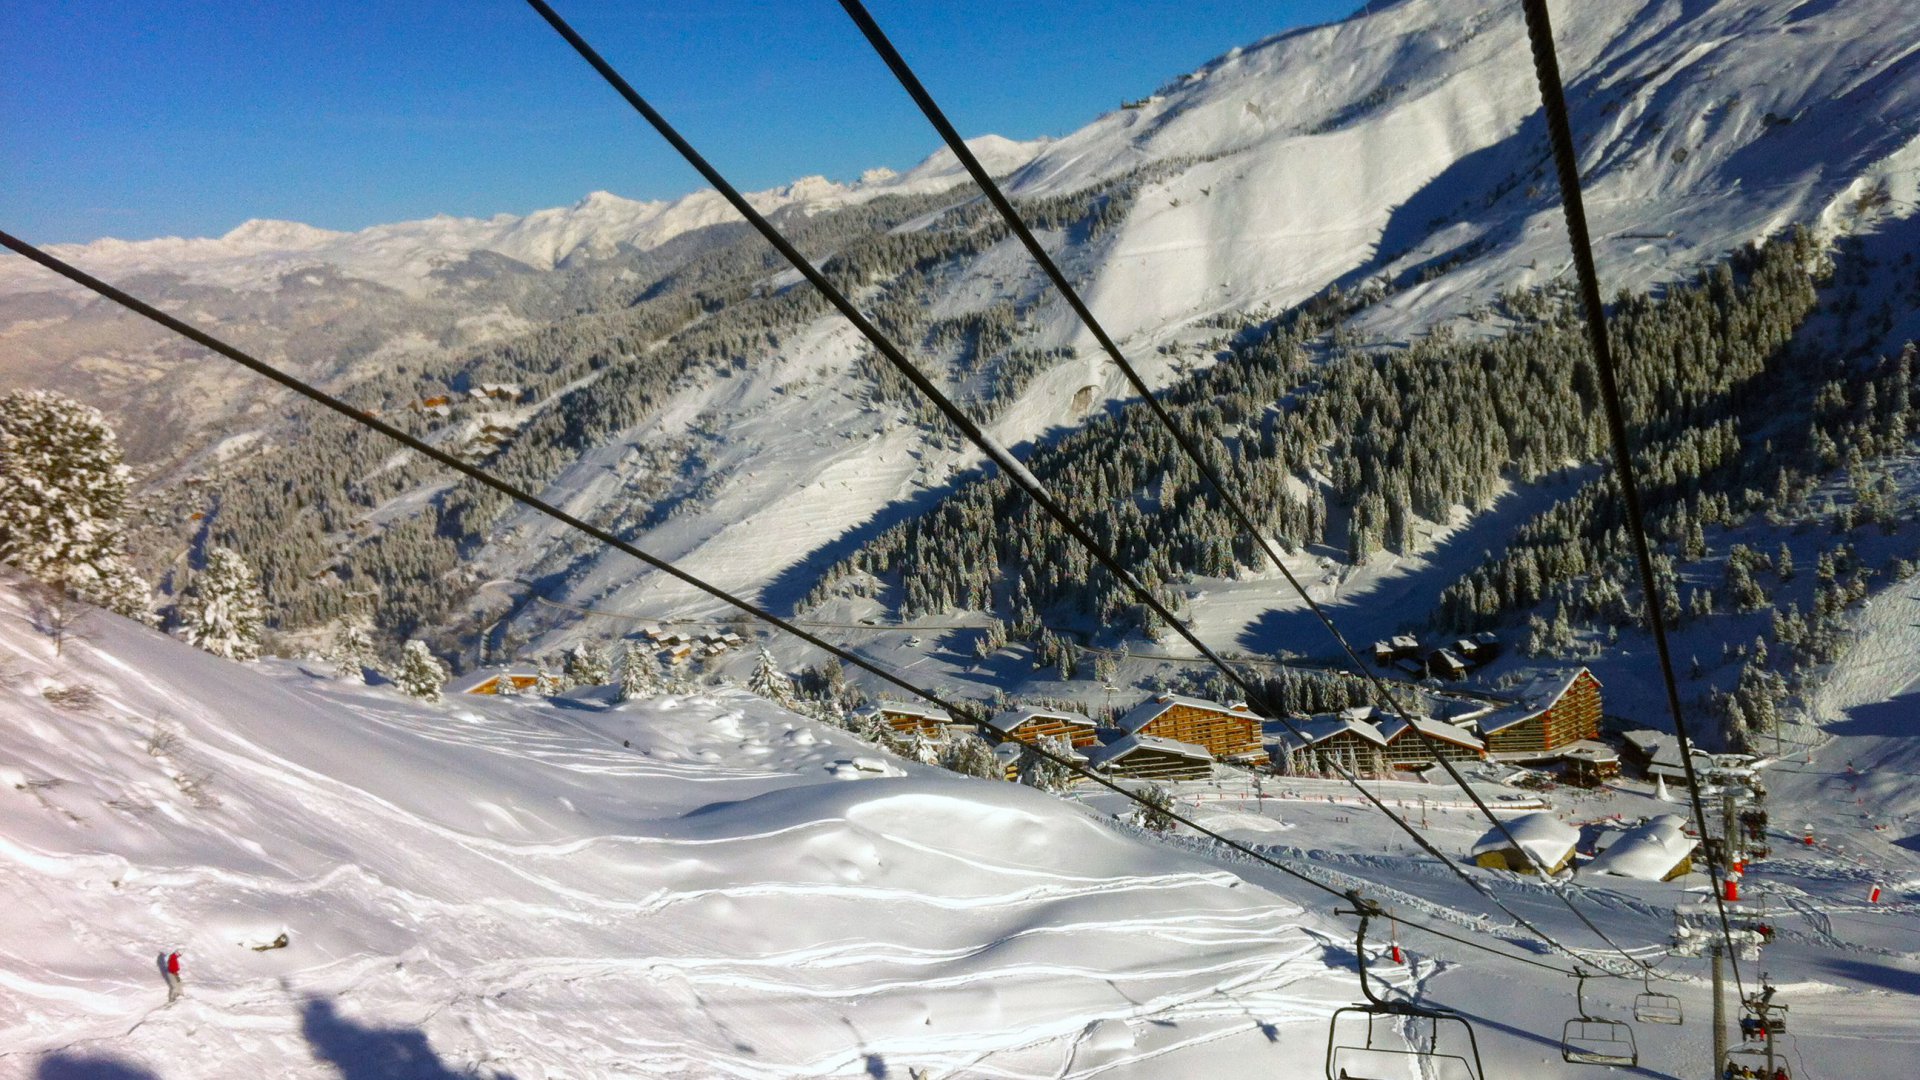 The Meribel Ski Area